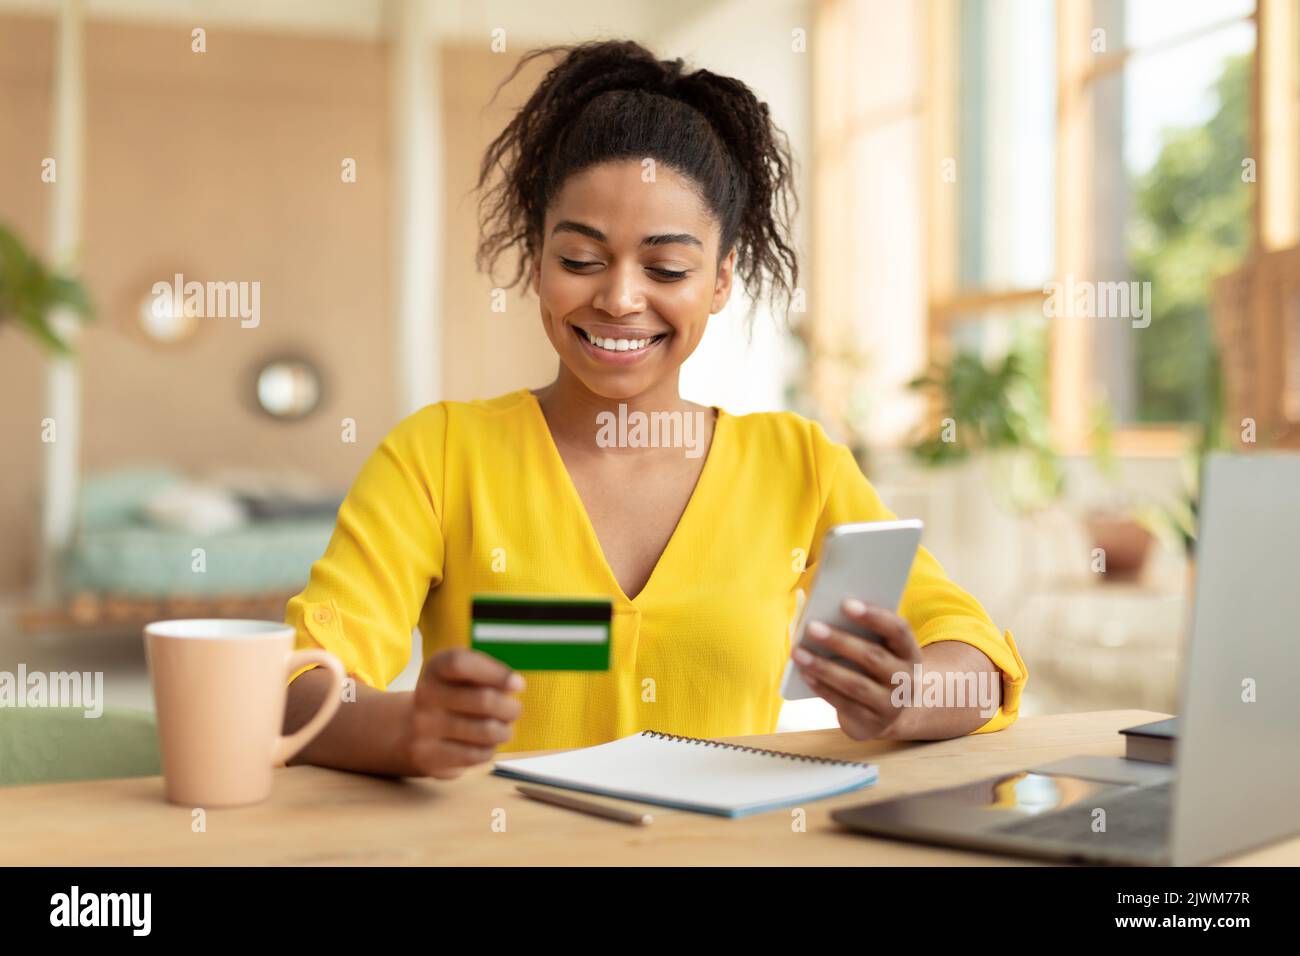 Femme américaine africaine positive avec smartphone et carte de crédit achetant des biens sur le Web, assis au bureau à la maison Banque D'Images